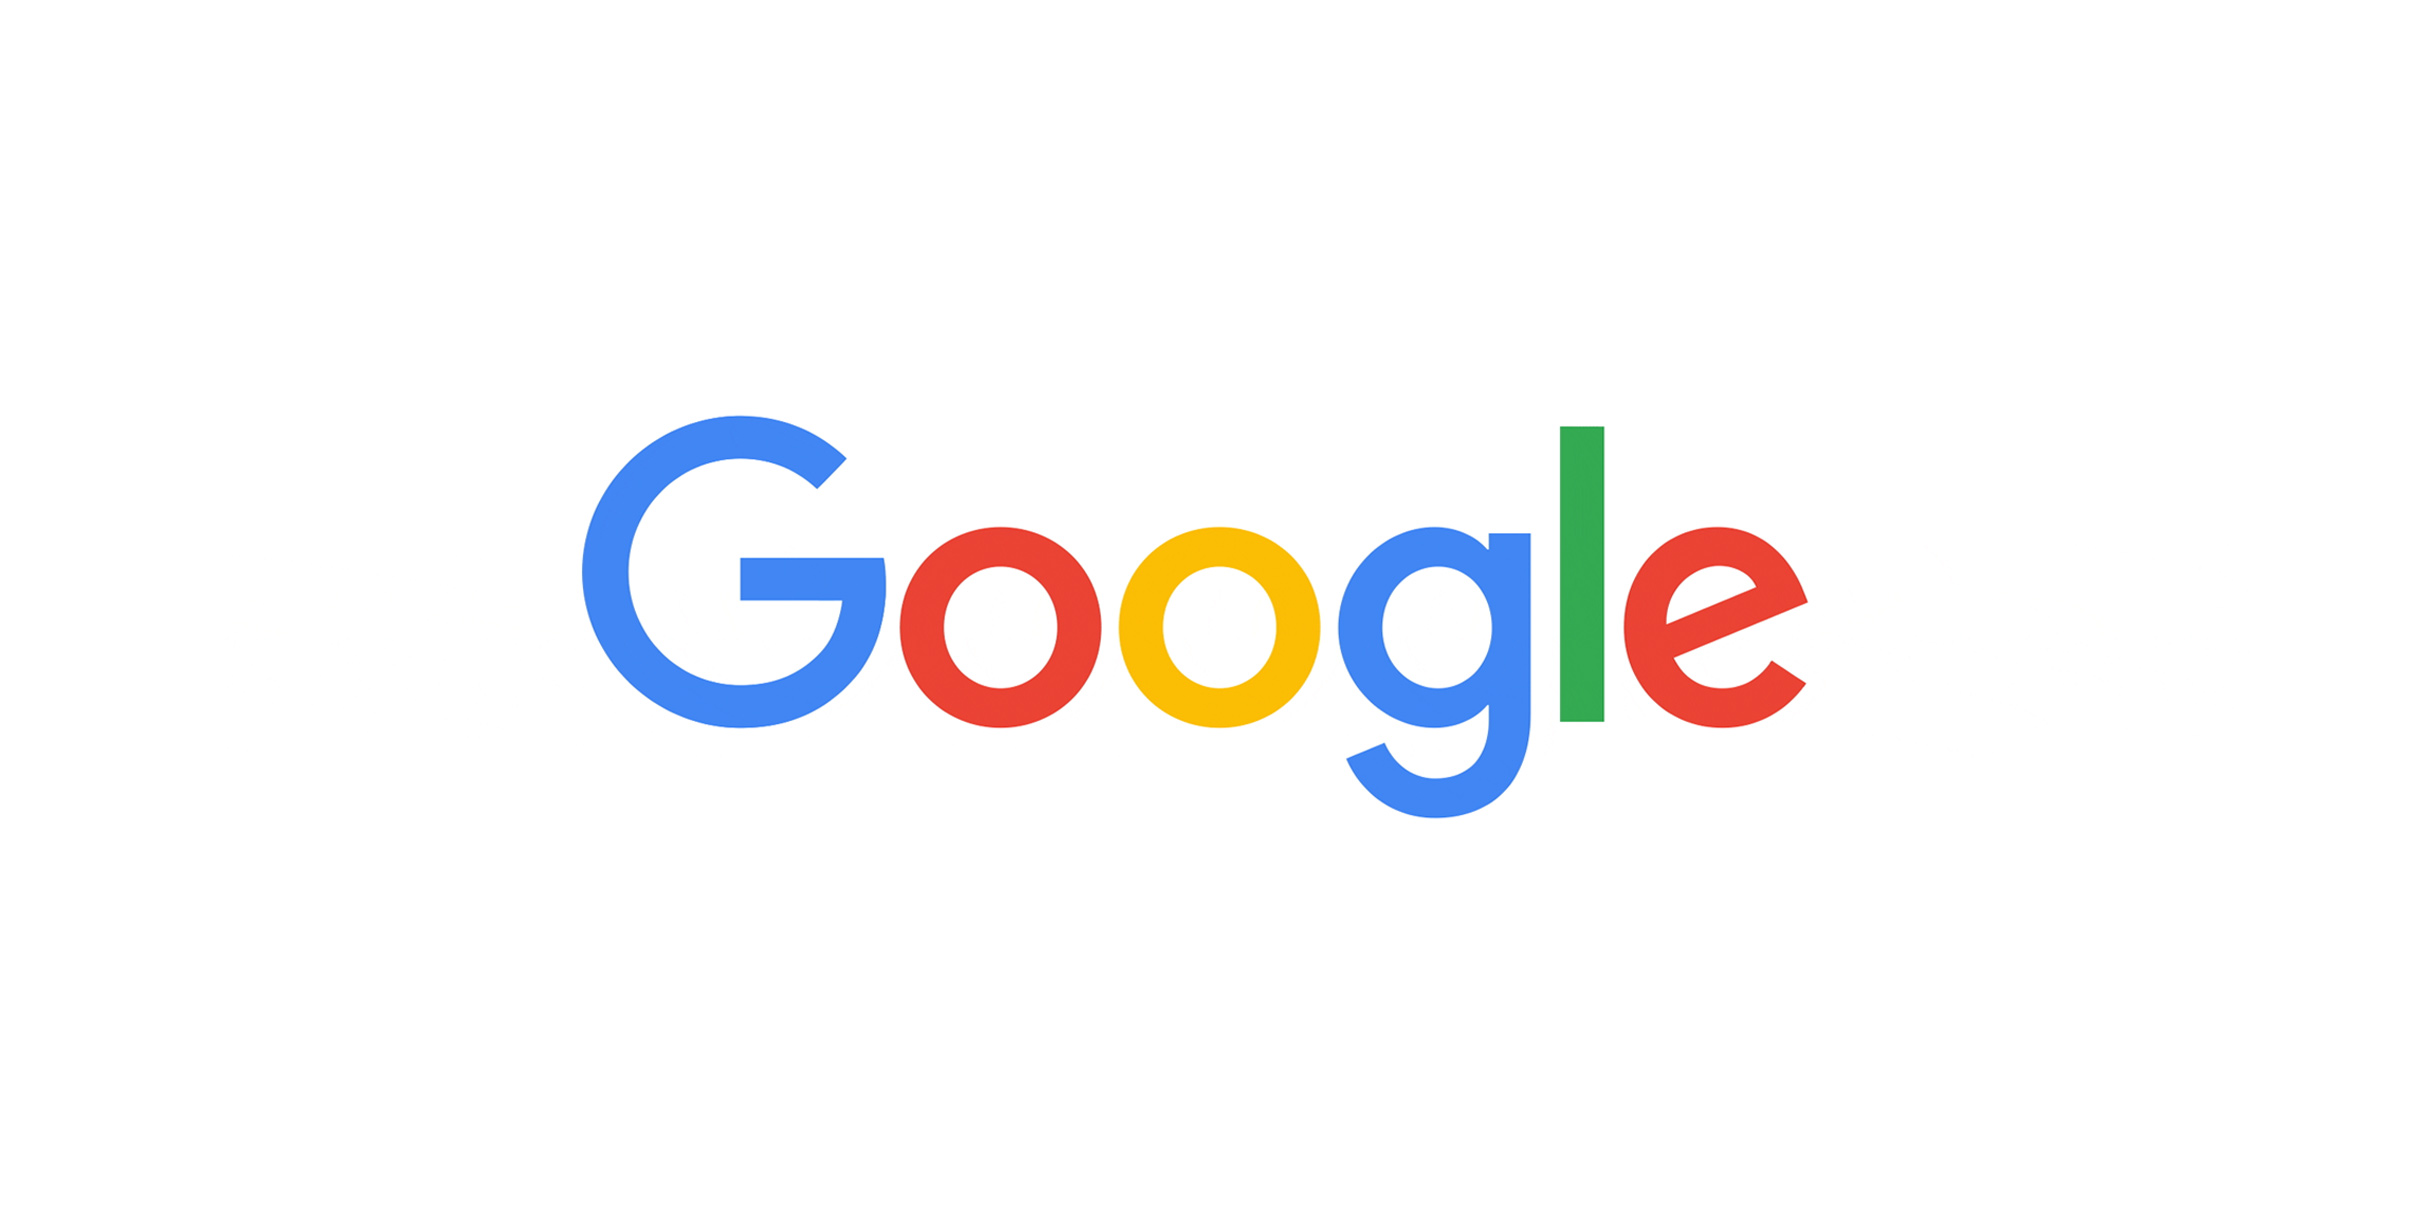 إيرادات إعلانات جوجل تتخطى 50 مليار دولار بنسبة 69% خلال 3 أشهر